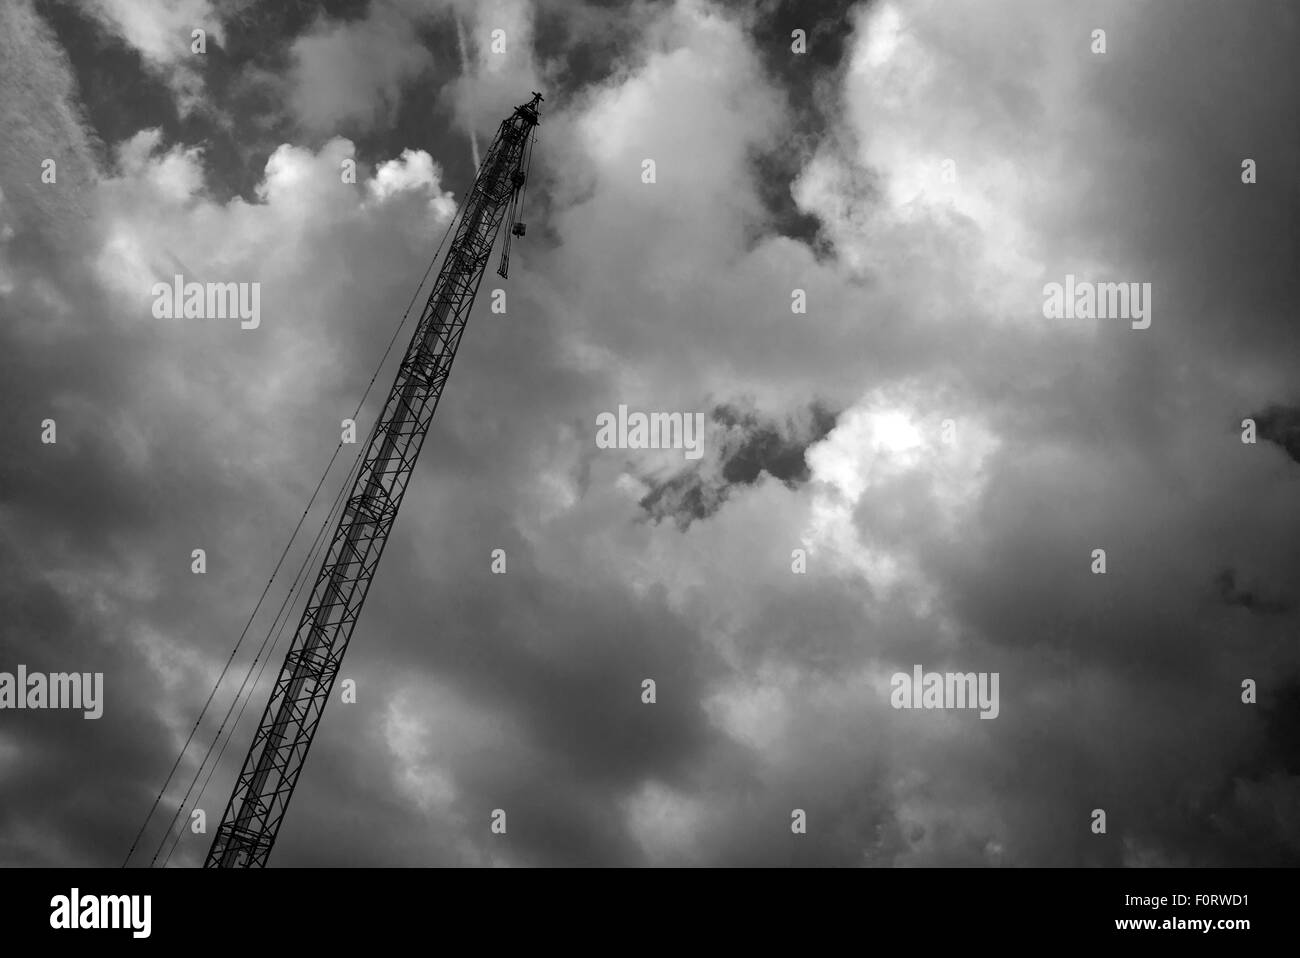 Tall Crane contre ciel nuageux, noir et blanc Banque D'Images